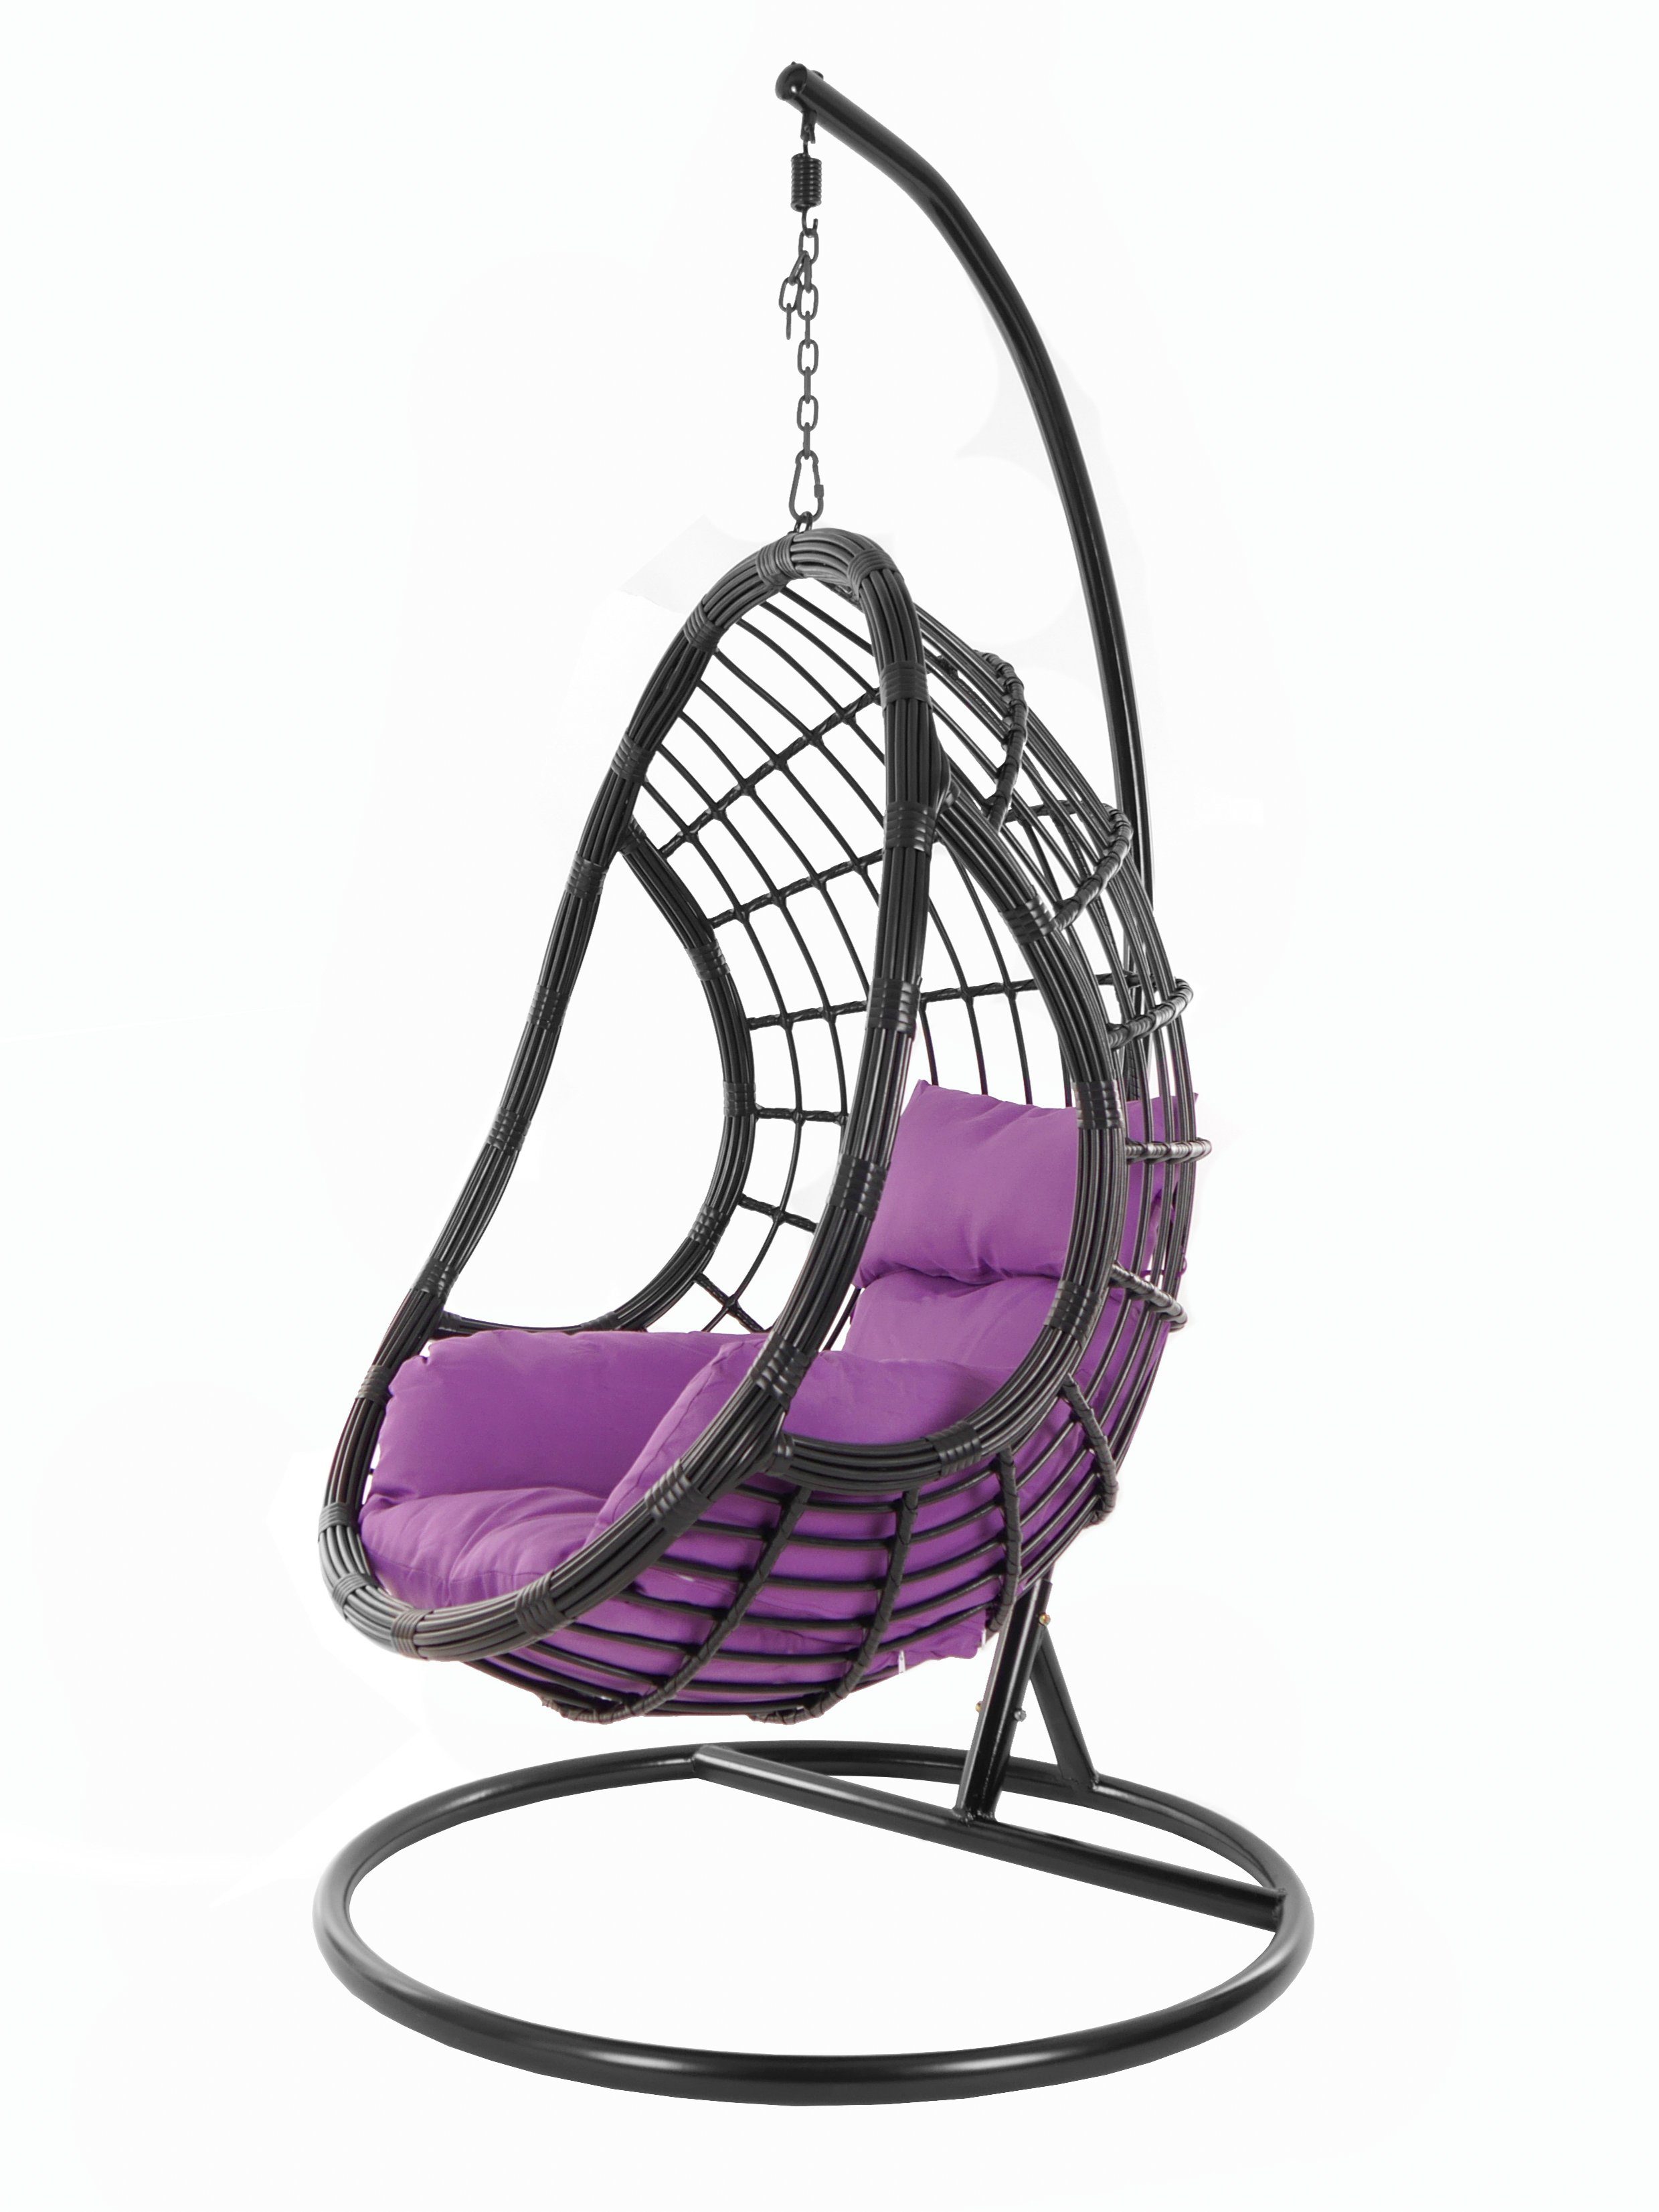 KIDEO Hängesessel PALMANOVA black, Schwebesessel, violet) mit und Chair, (4050 Gestell Swing Hängesessel lila Nest-Kissen Kissen